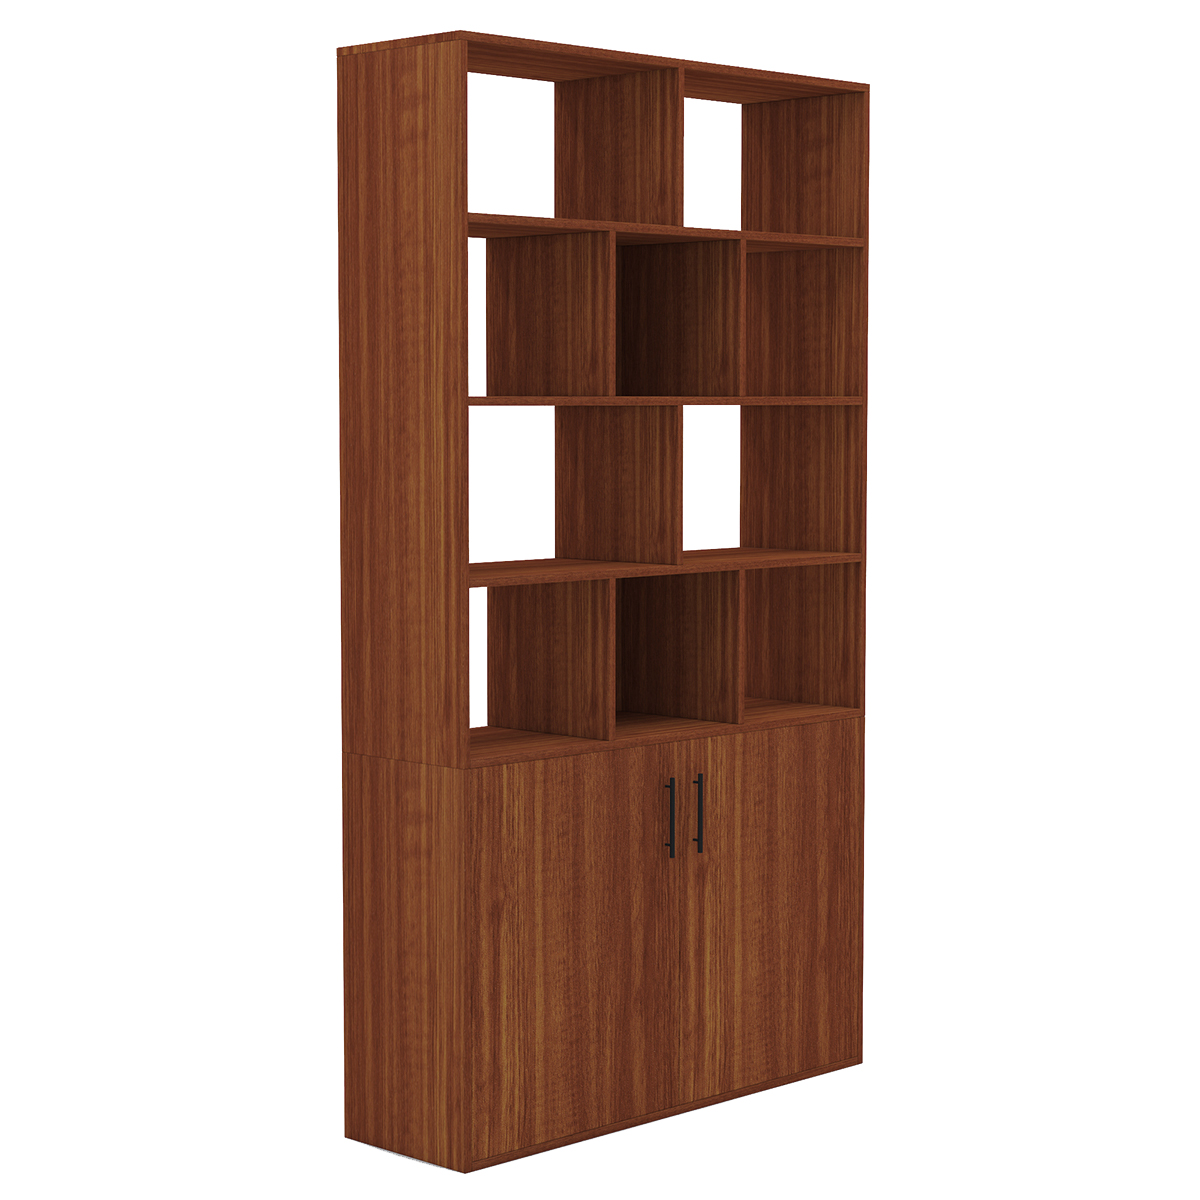 BlackWhiteOak-Dark-CherryWalnut-Wooden-Bookcase-Storage-Bookcase-with-Door-Storage-Finishing-Bookcas-1909997-17